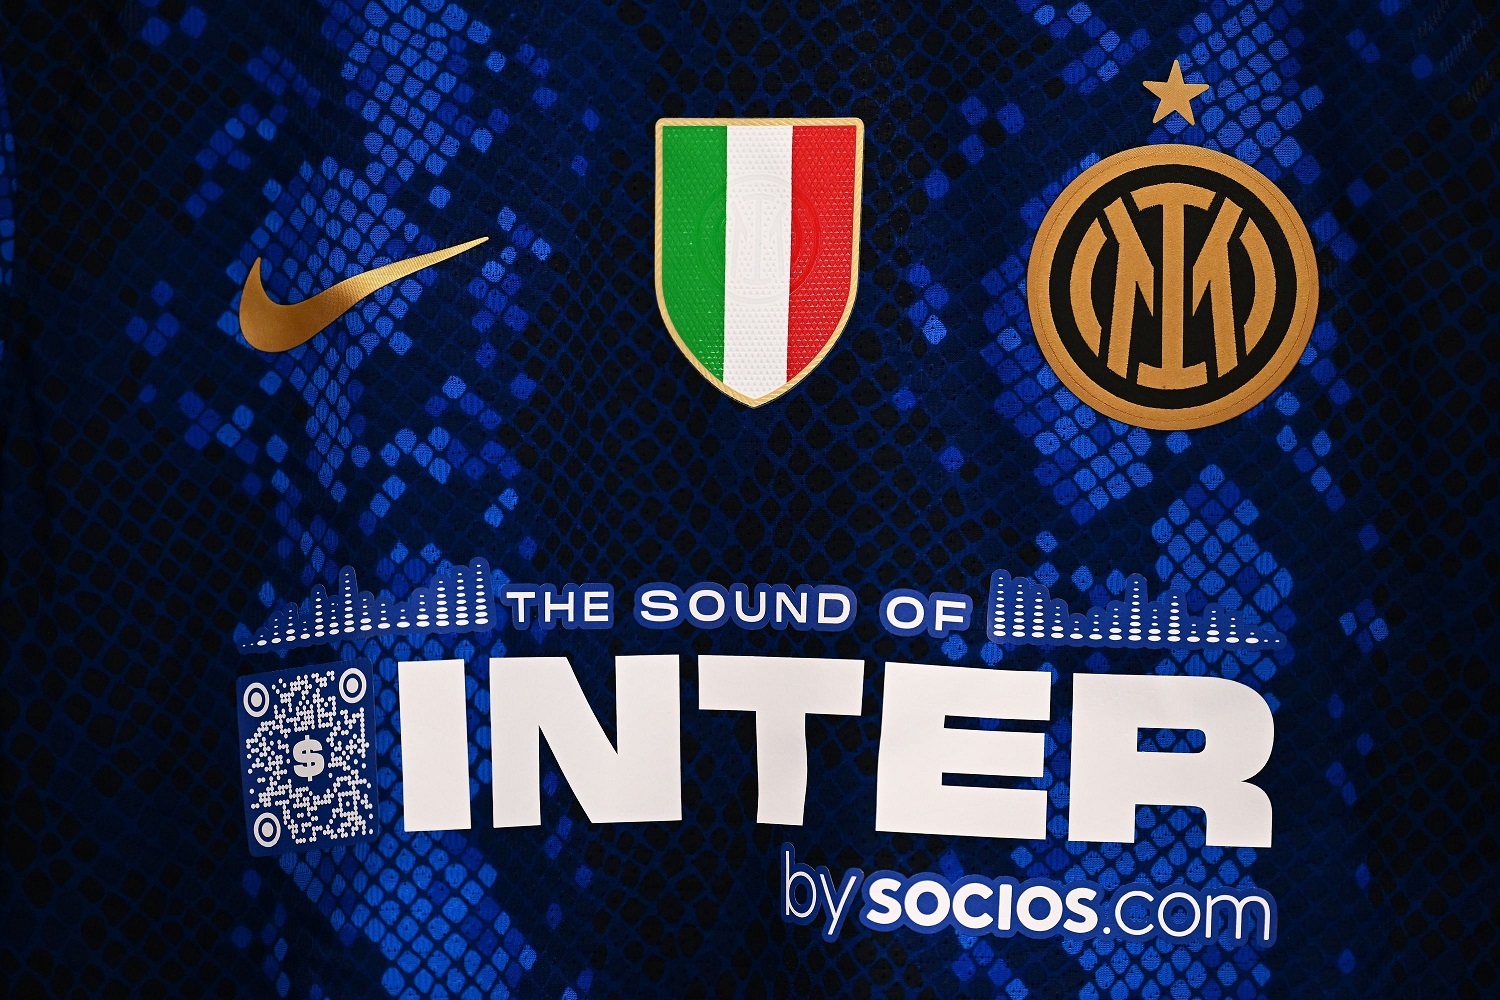 Durissime accuse all'Inter, poi le scuse: l'attore juventino divide il web |  Sport e Vai